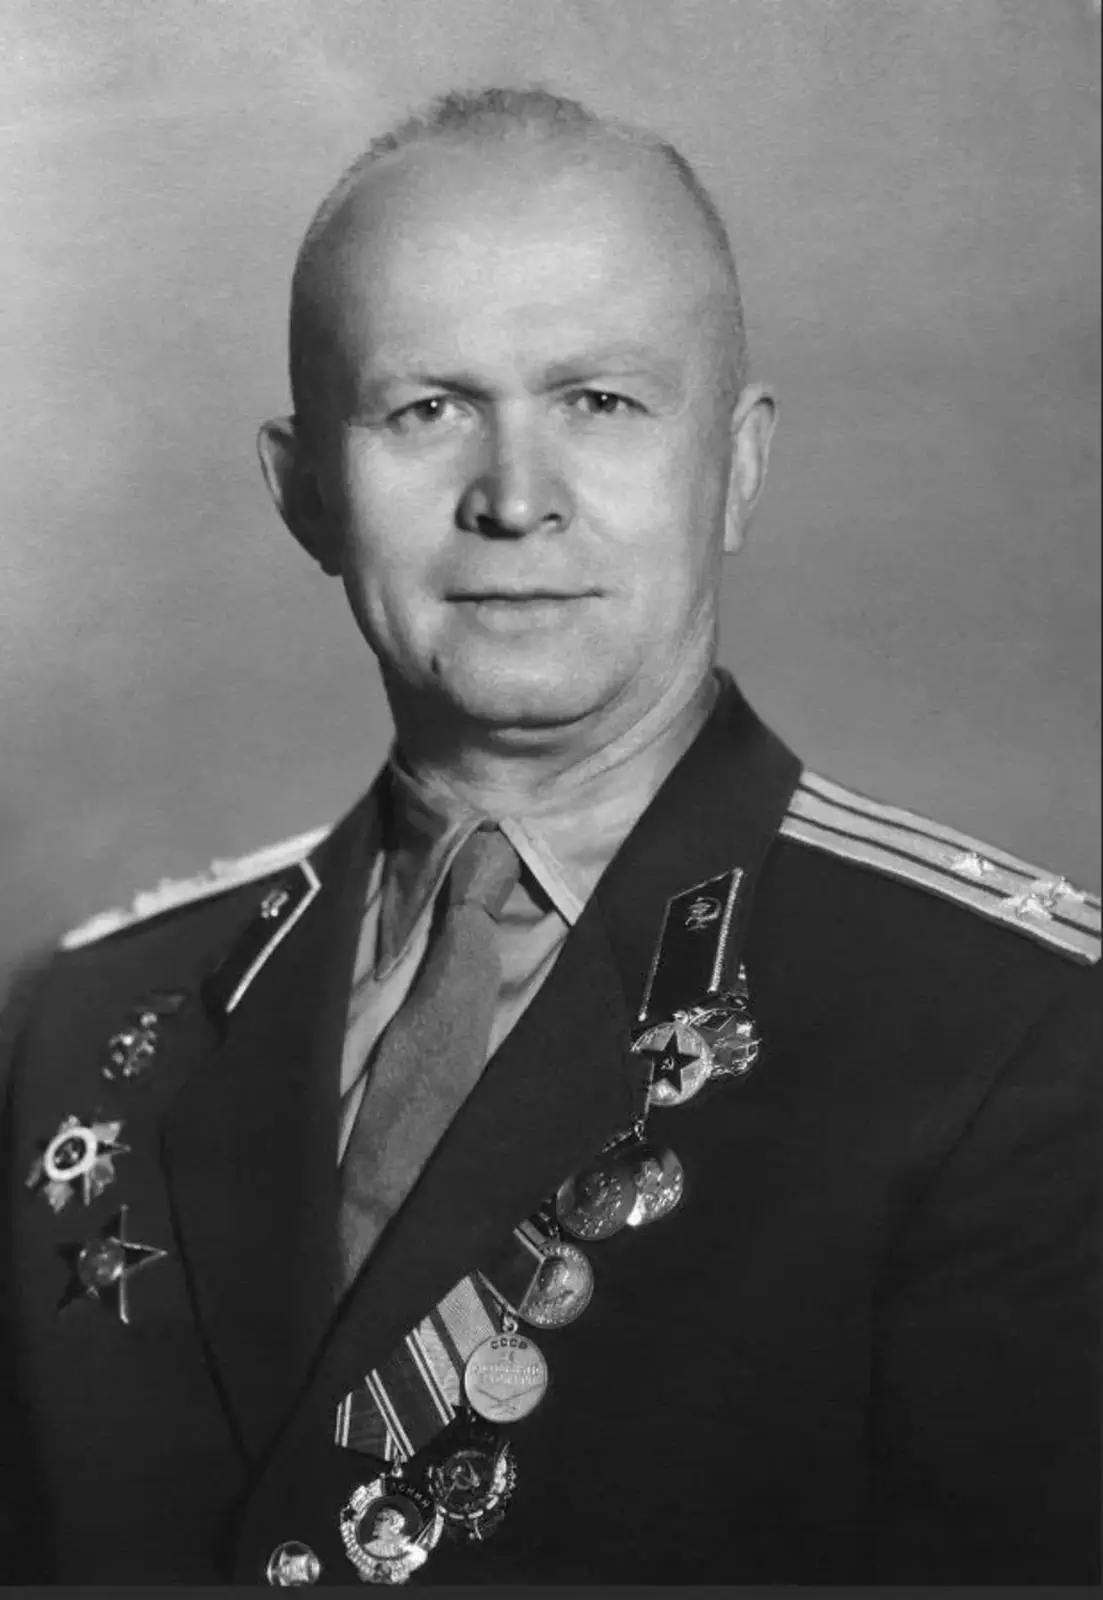 Владимир Иванович Яздовский, доктор медицинских наук, профессор, полков-ник медицинской службы, был «Главным космическим врачом» в начале космонавти-ки в нашей стране.